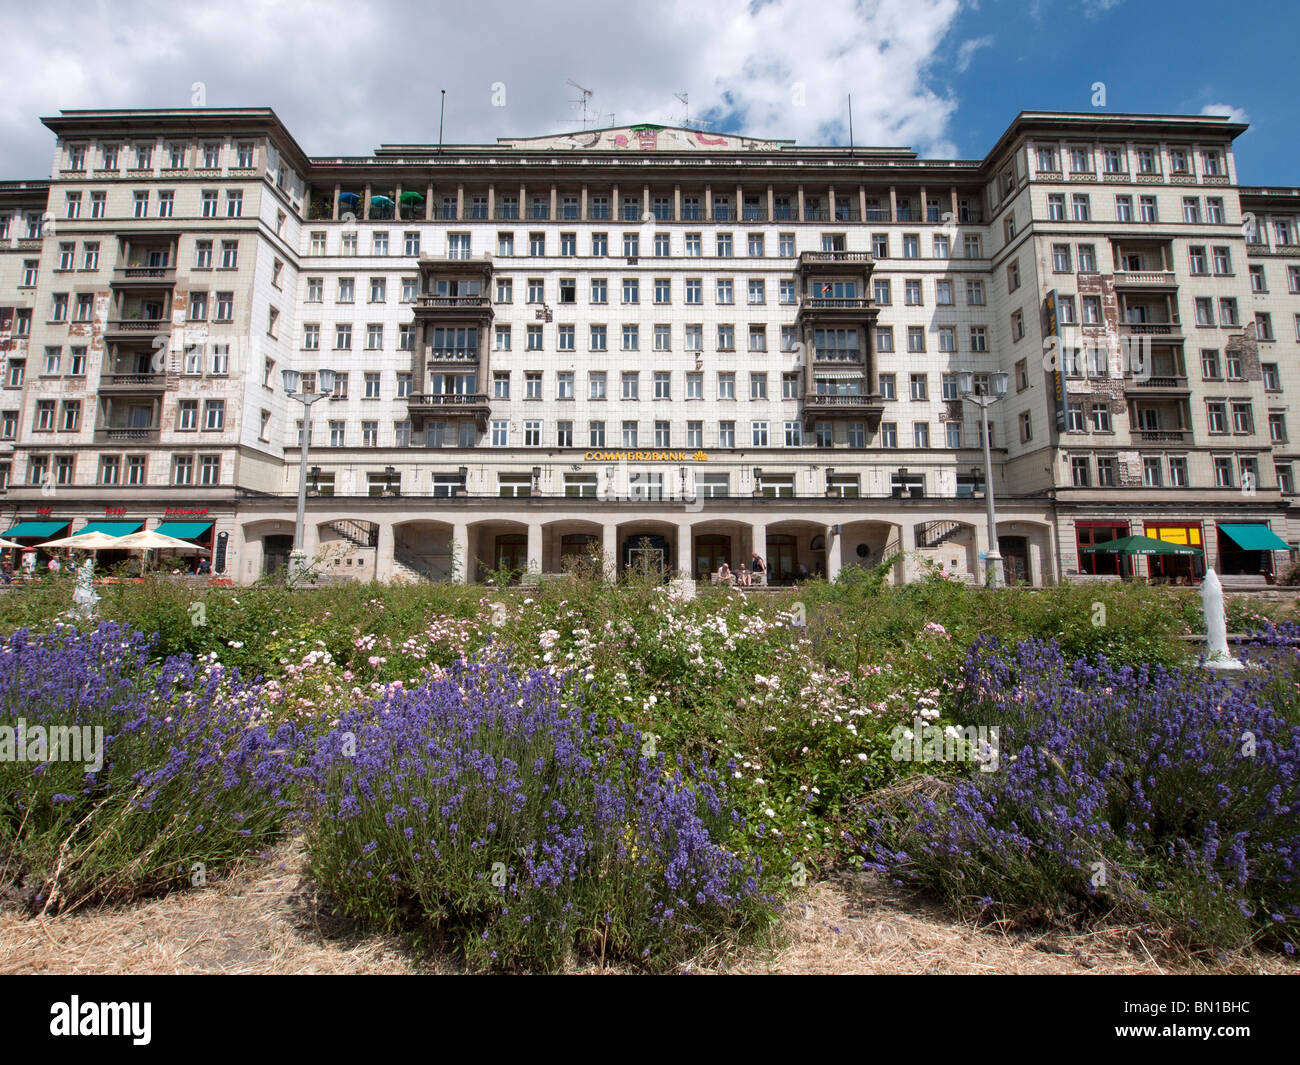 Grande era socialista vecchio edificio di appartamenti in Karl Marx Allee nella ex Berlino est nella Repubblica federale di Germania Foto Stock